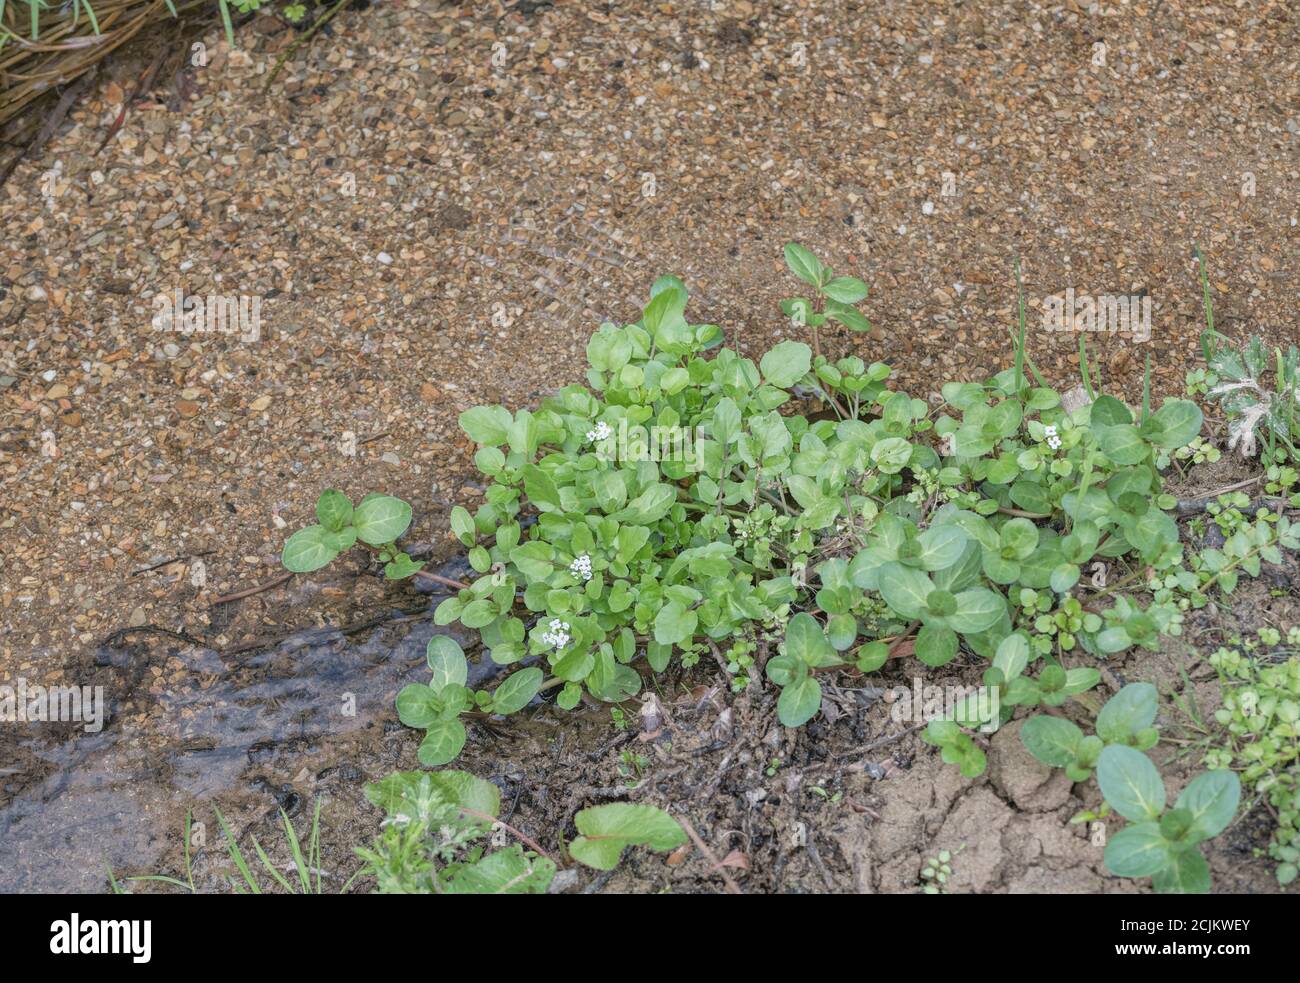 Piccolo cerotto di wercress selvatico fiorito / Nasturzio officinale in corrente d'acqua dolce. Brooklime ovale/Veronica beccabunga in basso a destra. Foto Stock